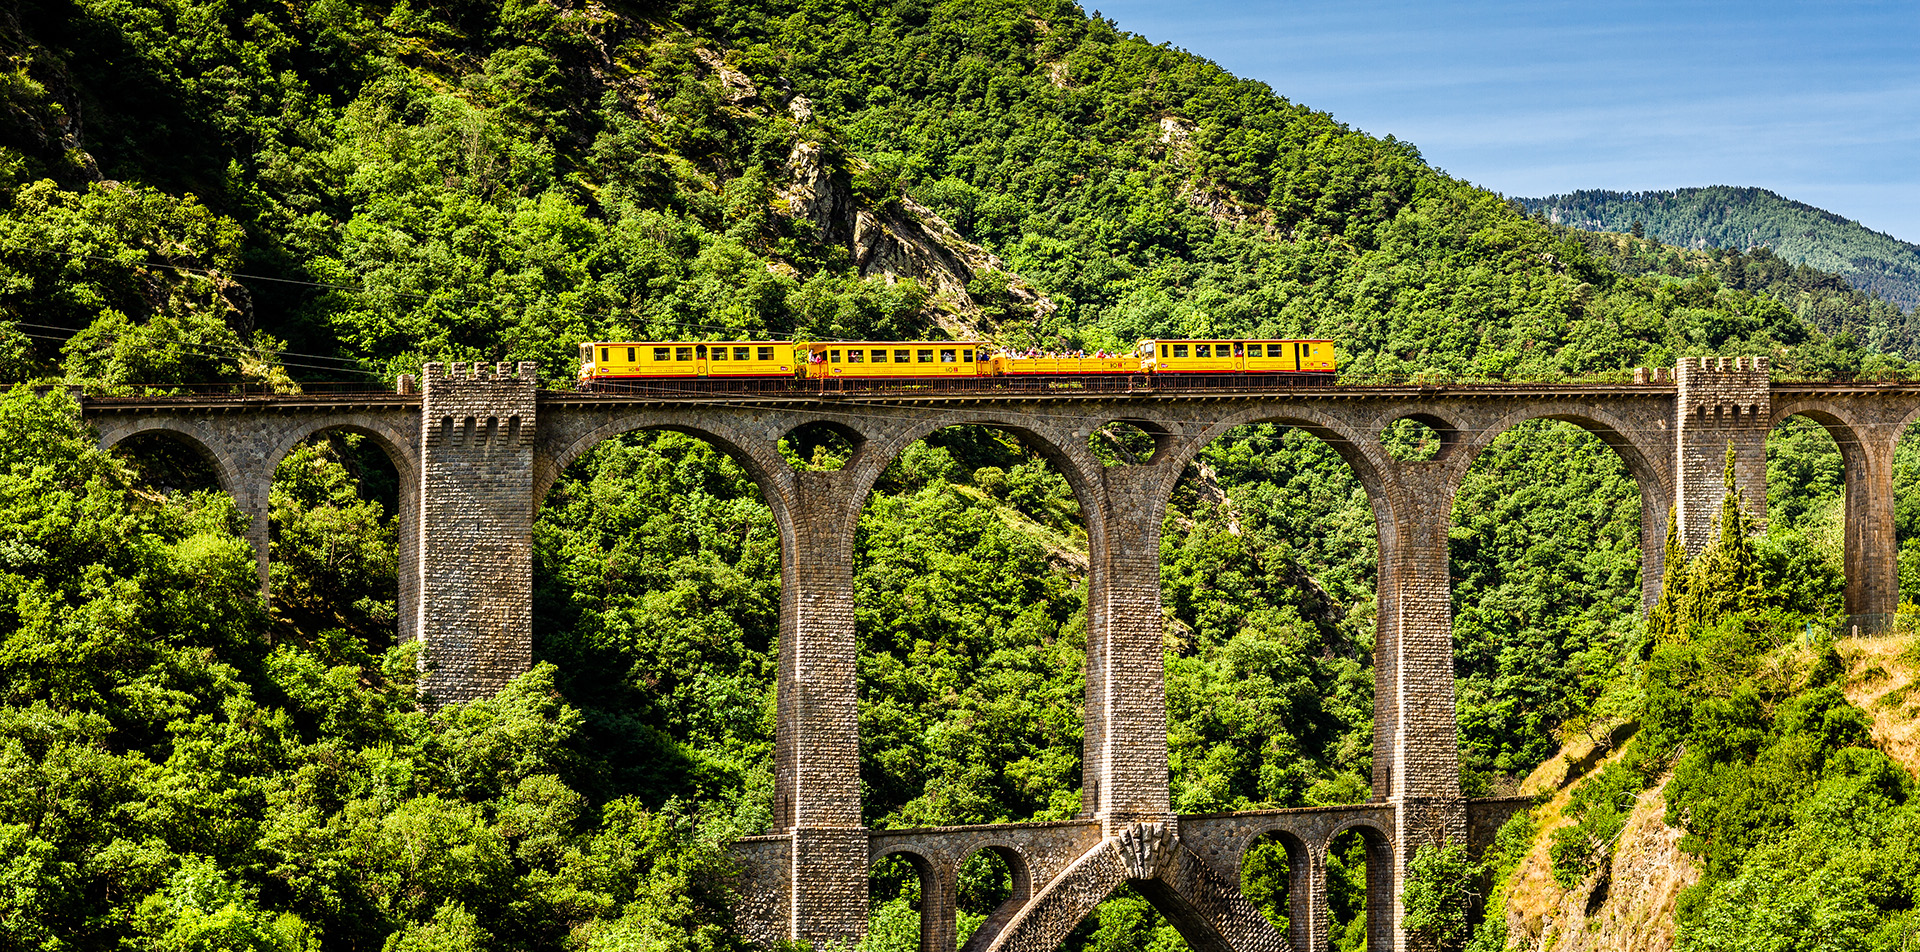 Le train jaune des Pyrénées-Orientales traversant un grand viaduc en pierre au milieu d'un paysage boisé.